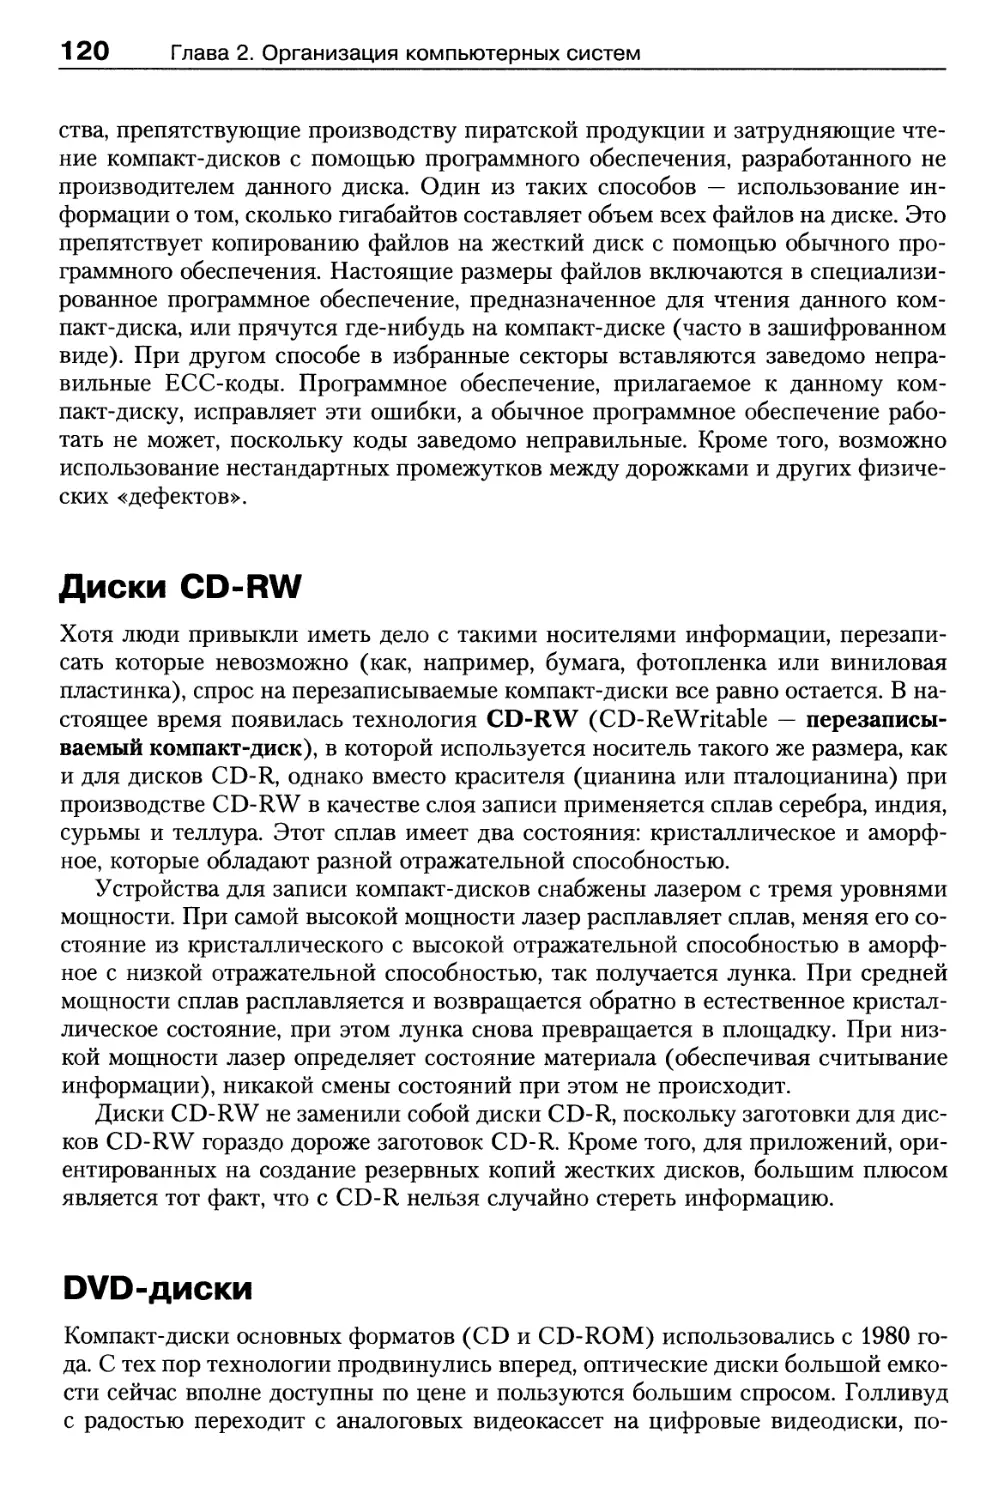 Диски CD-RW
DVD-диски